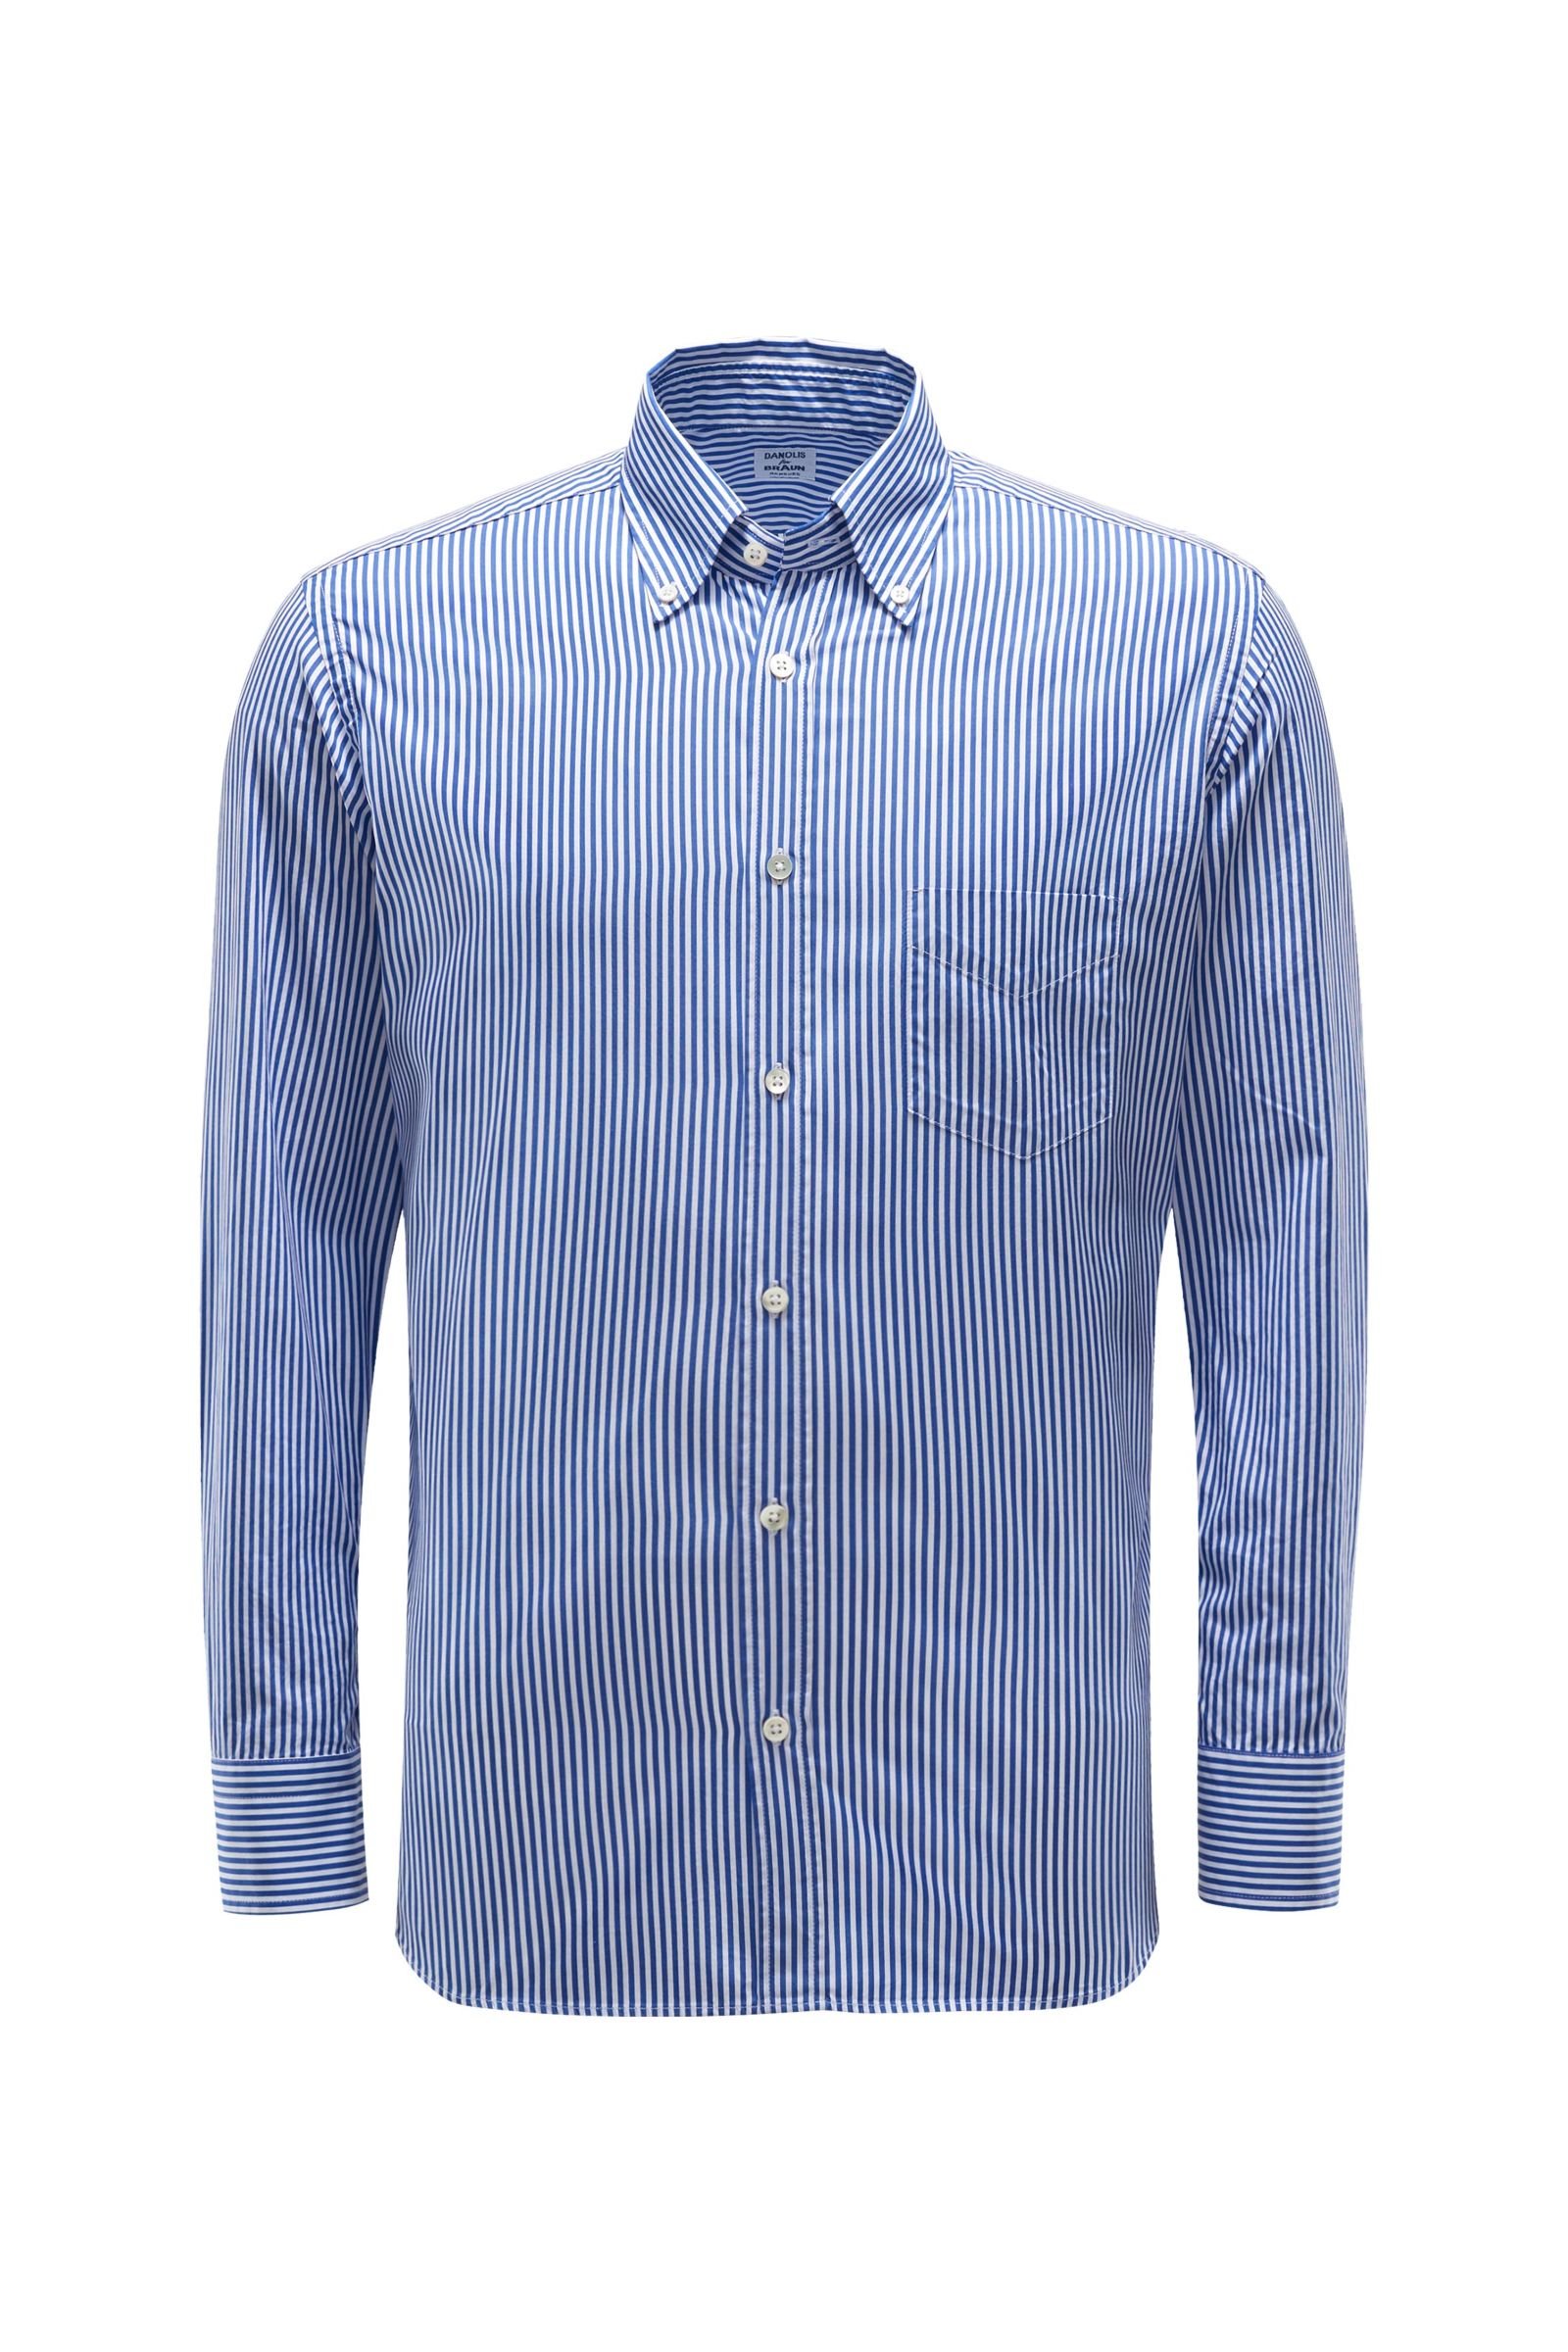 Casual Hemd Button-Down-Kragen blau/weiß gestreift